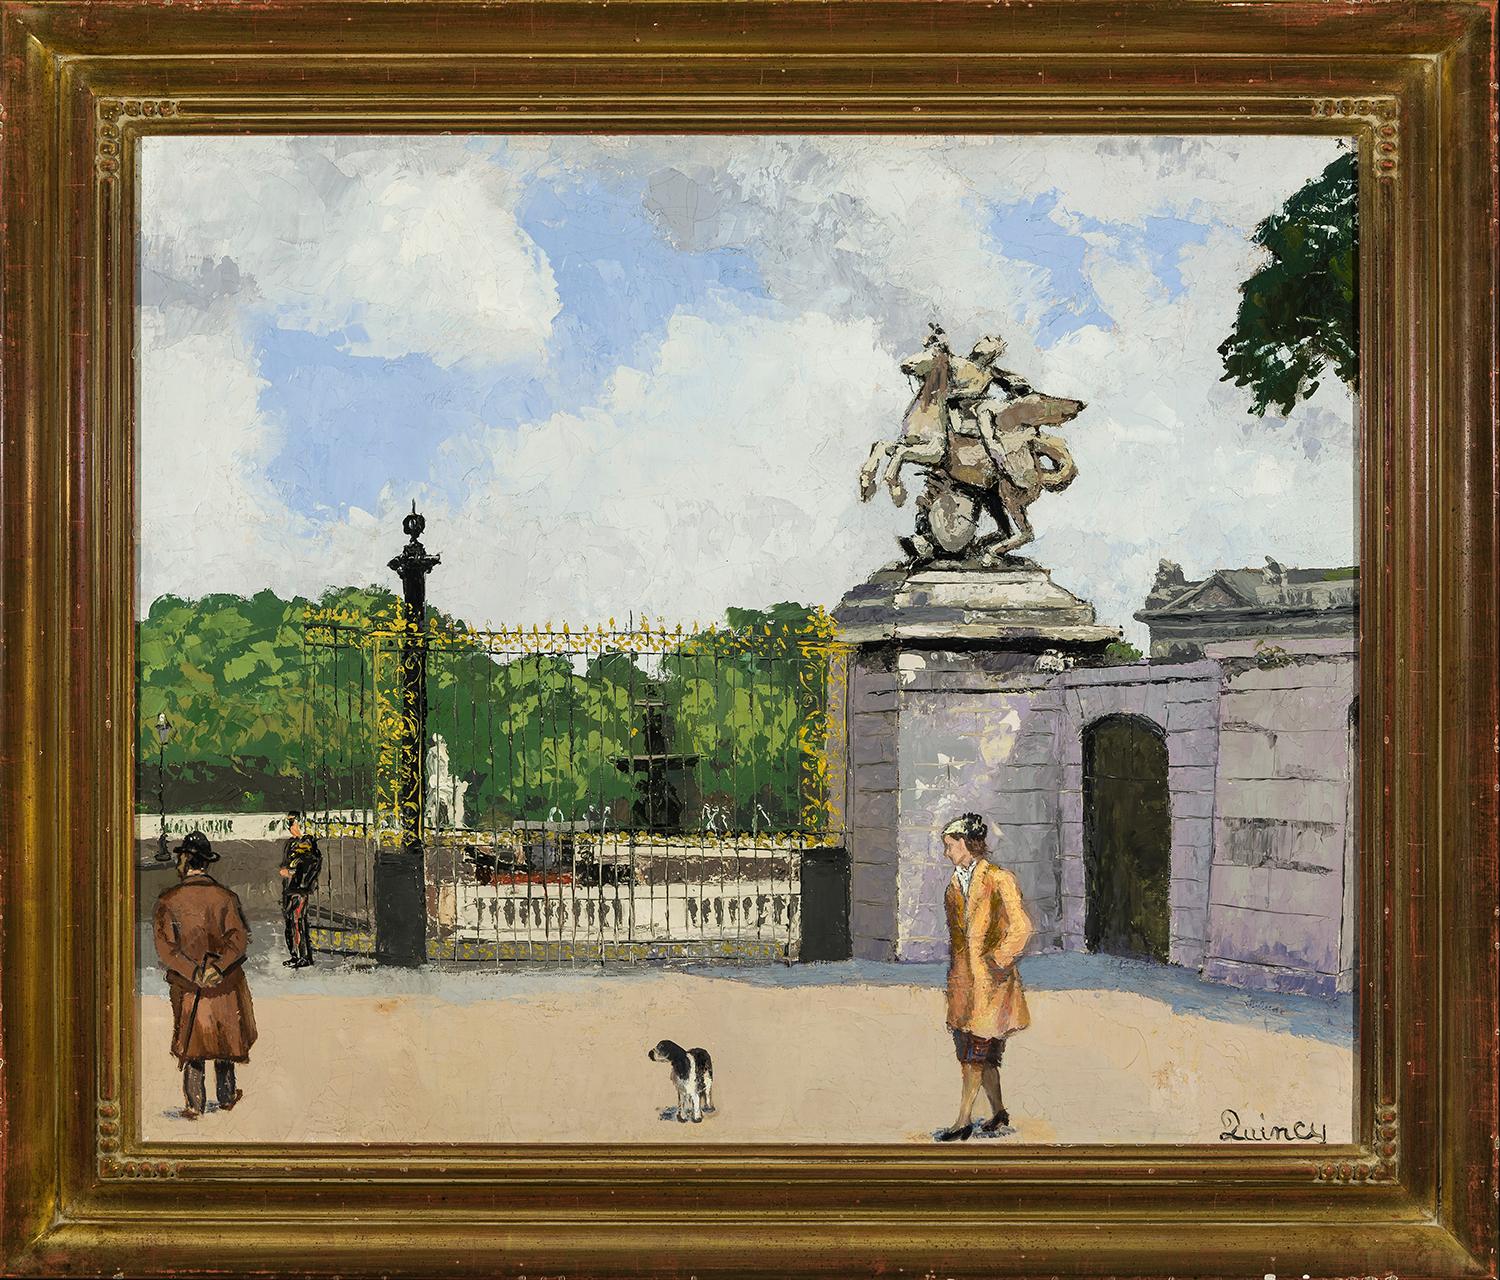 Jardin des Tuileries, Paris - Painting by Edmund Quincy